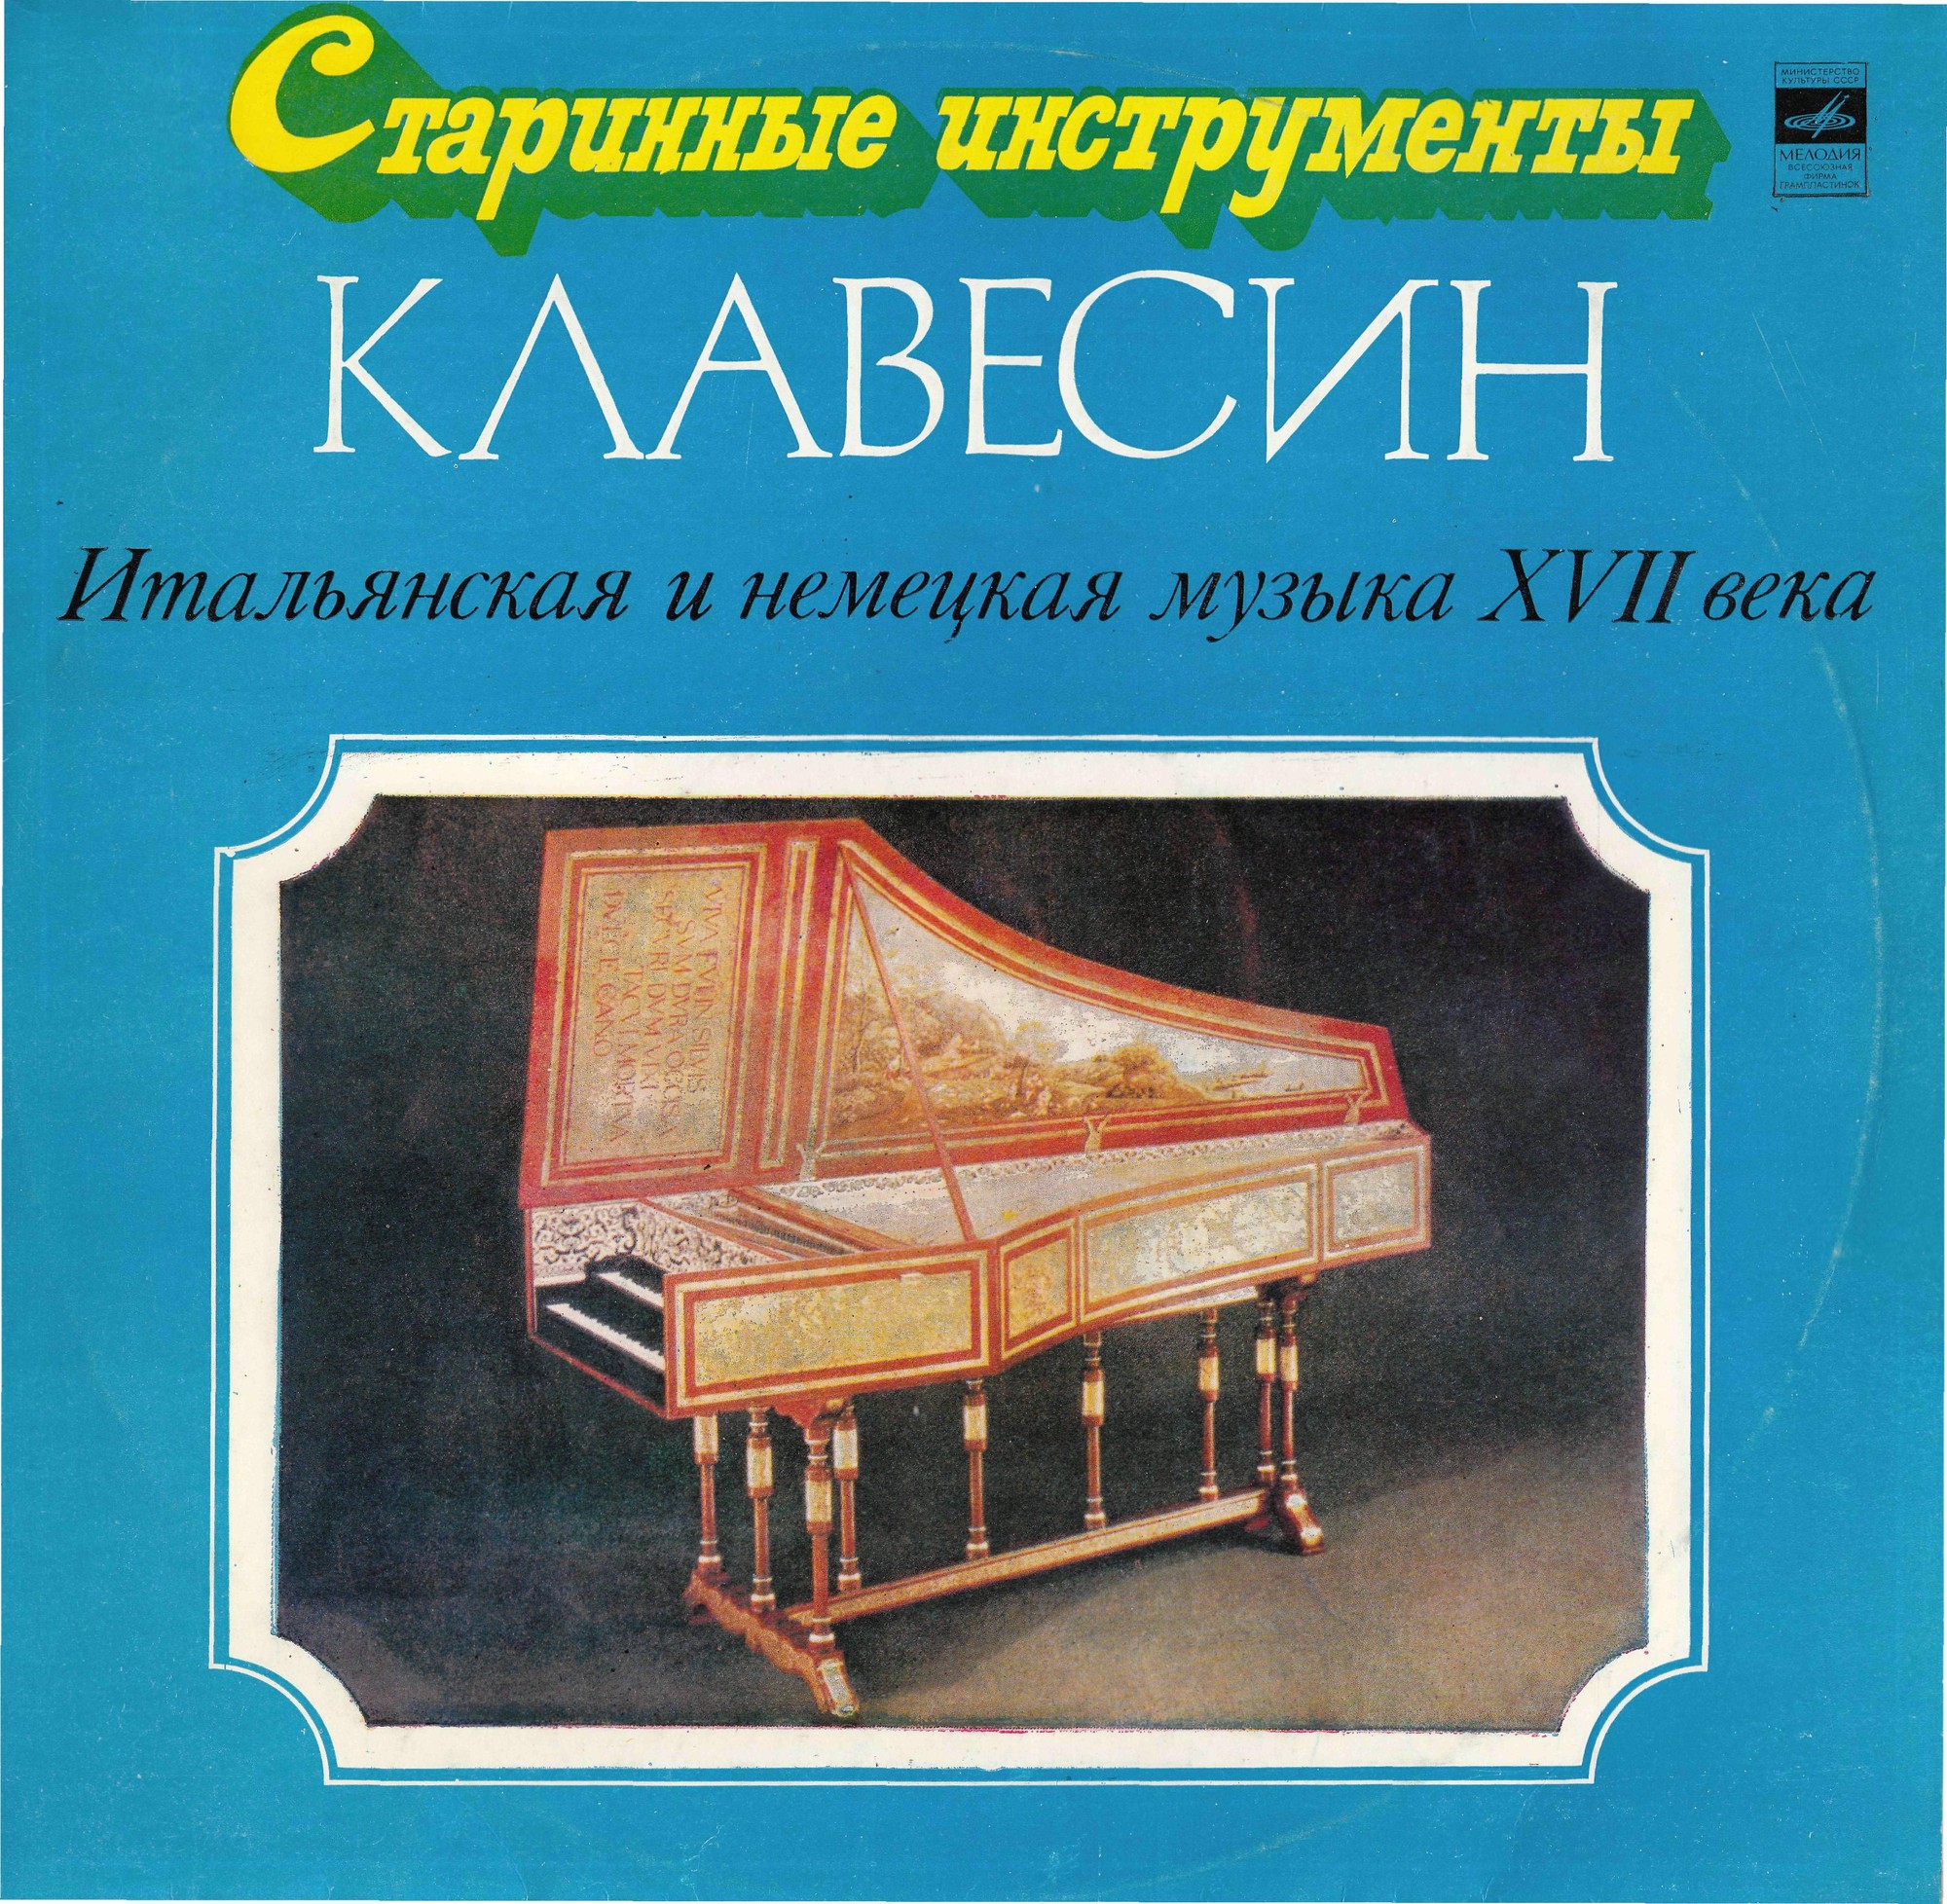 Клавесин (из серии «Старинные инструменты»)